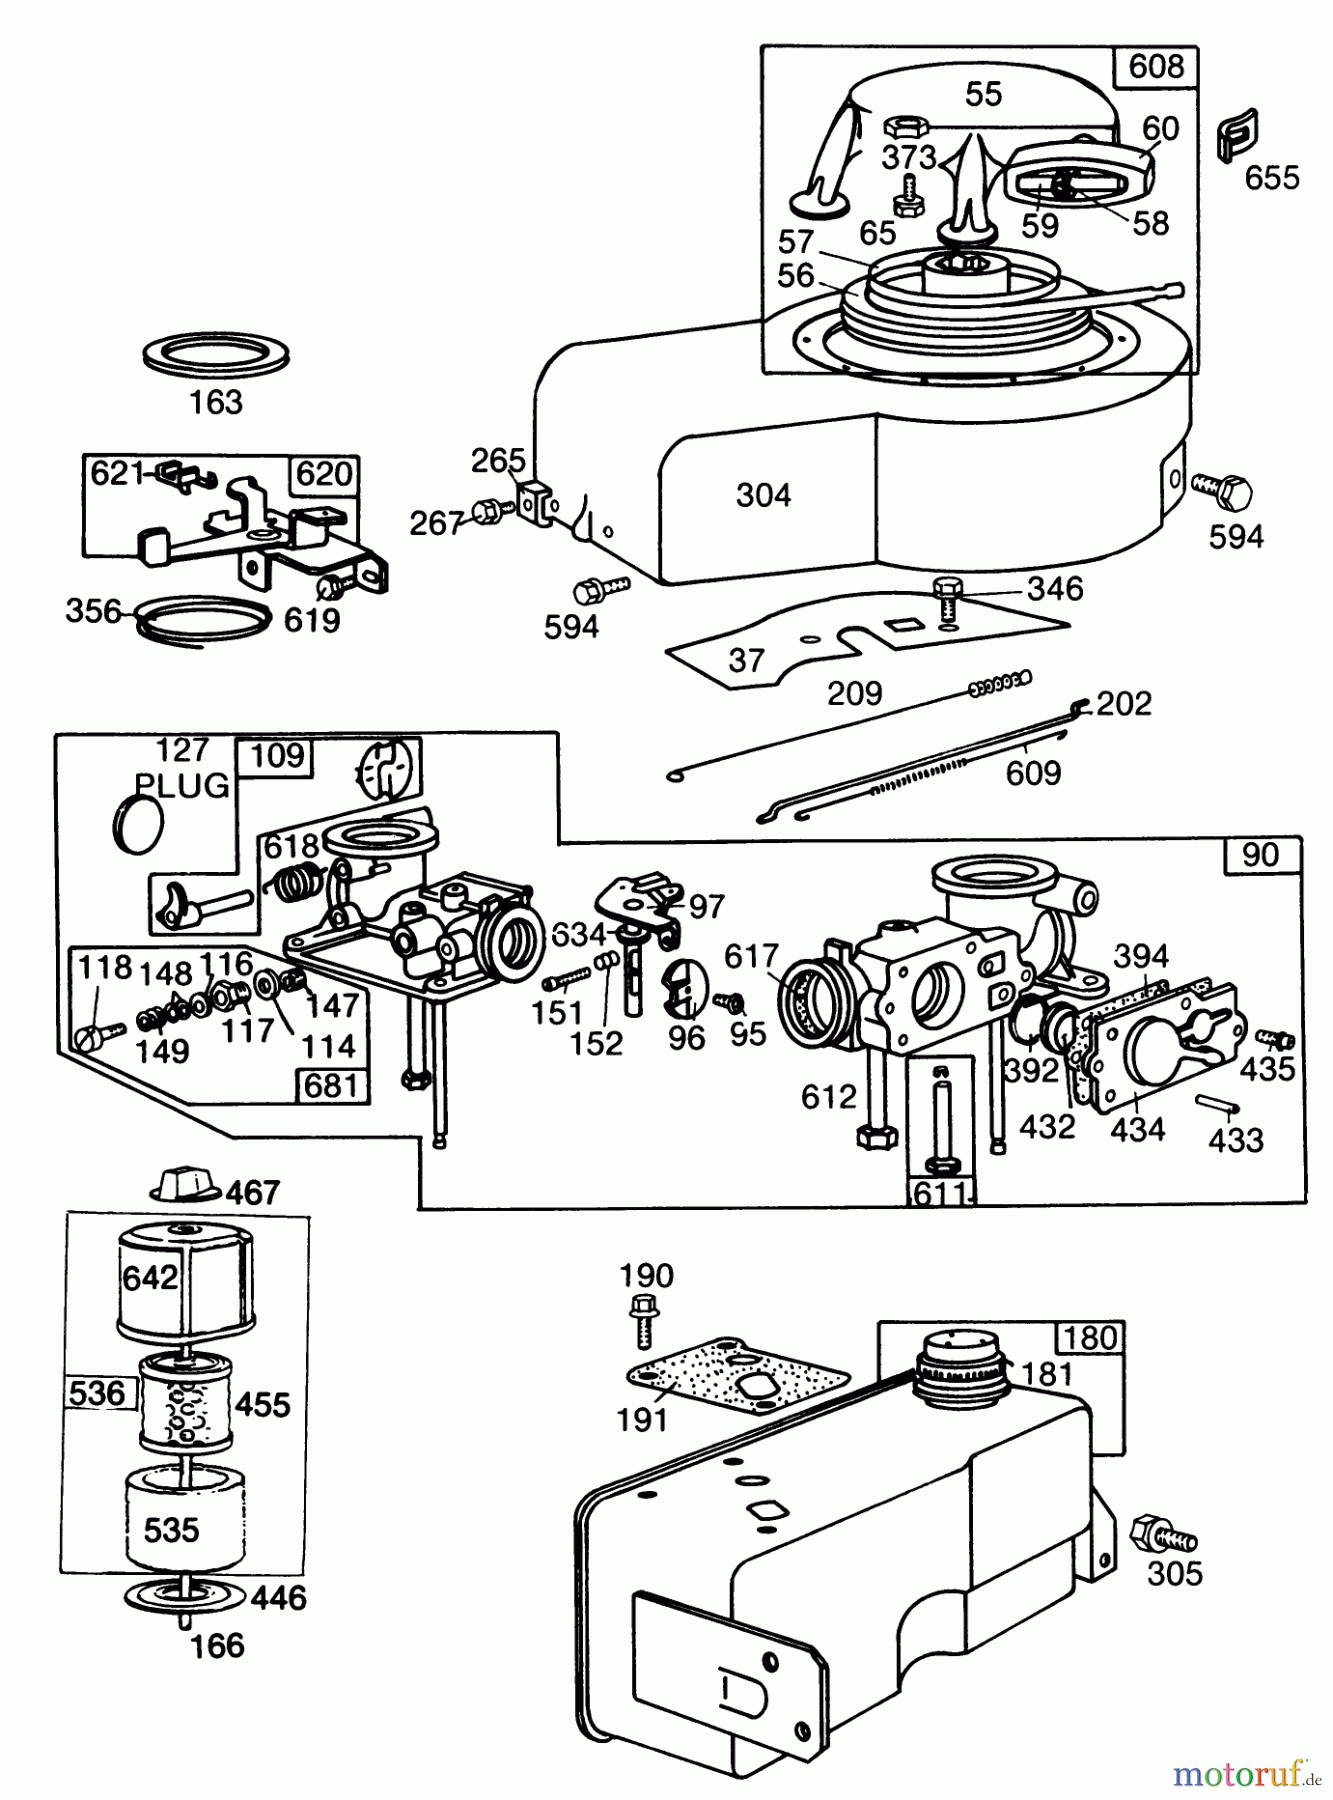  Toro Neu Mowers, Walk-Behind Seite 2 22010 - Toro Lawnmower, 1984 (4000001-4999999) ENGINE BRIGGS & STRATTON MODEL NO. 130902 TYPE 1200-01 #2